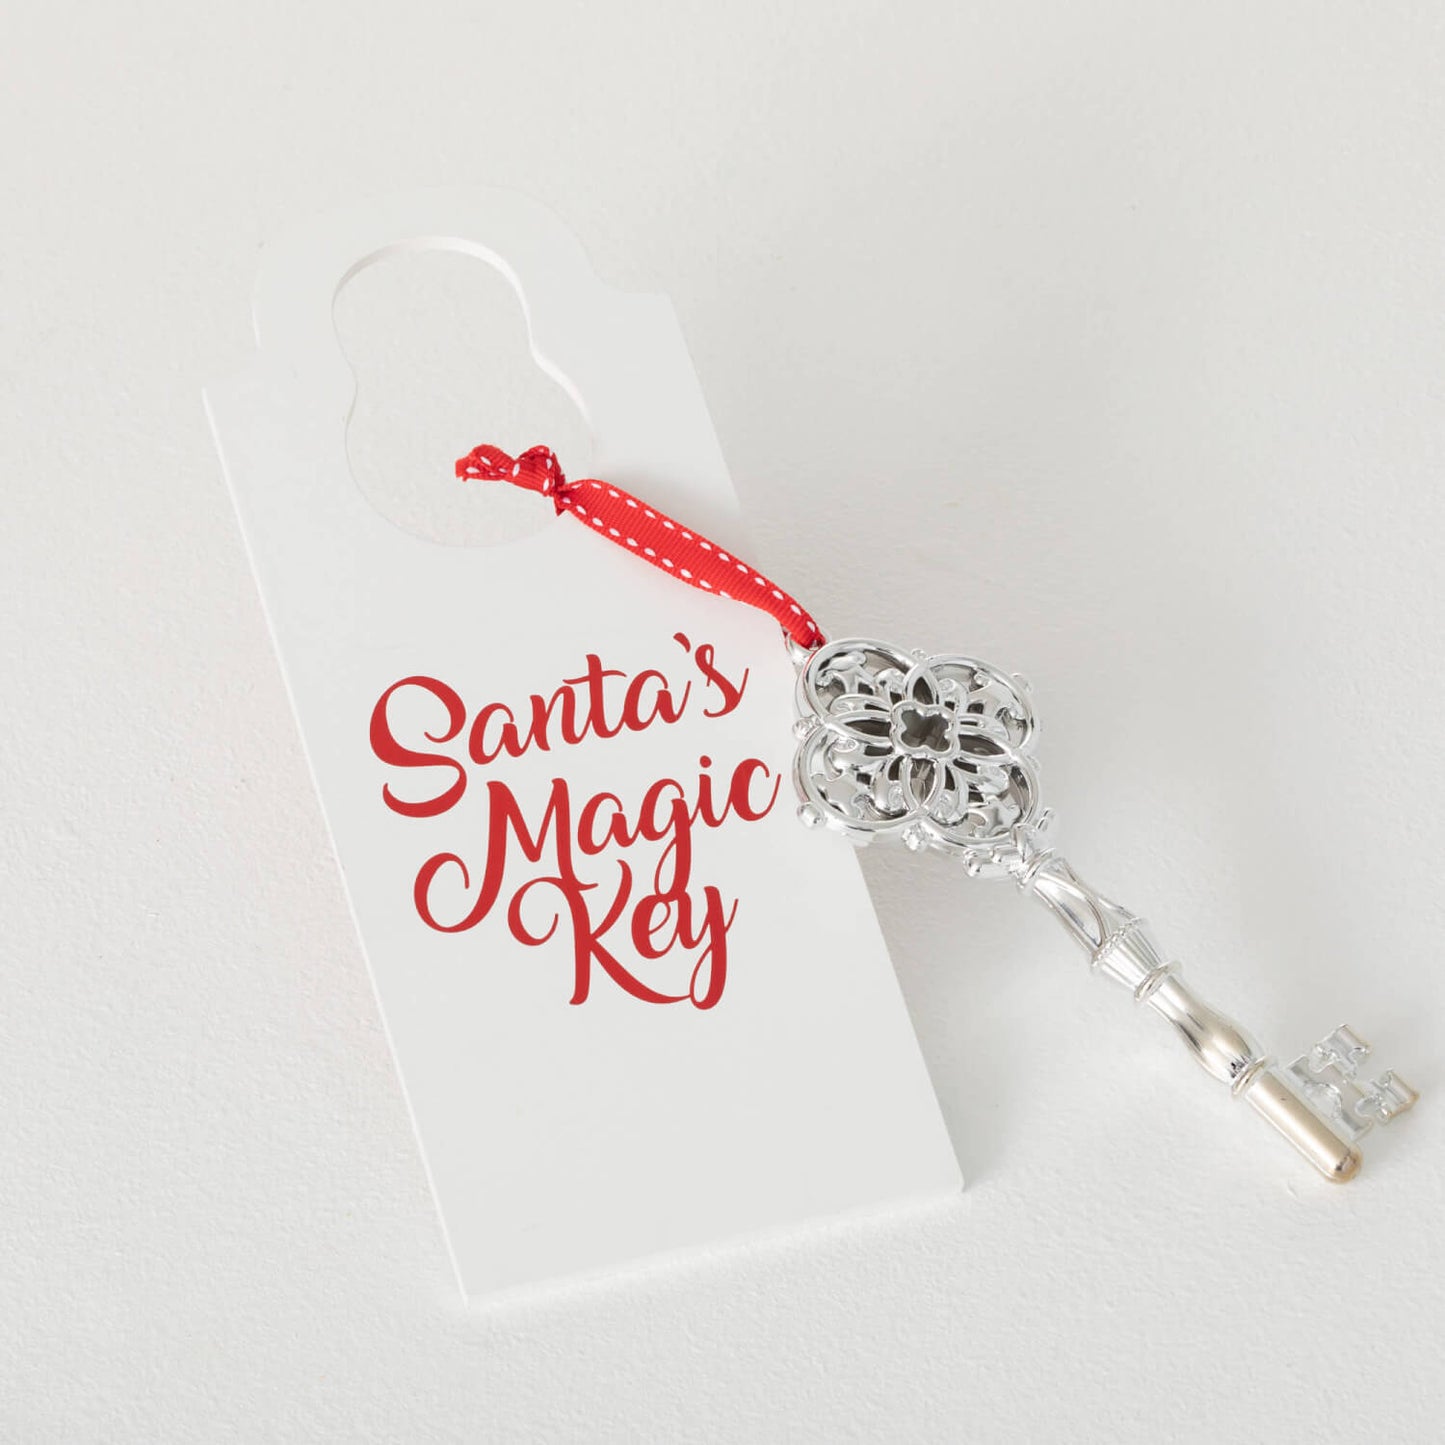 Santa Key Ornament